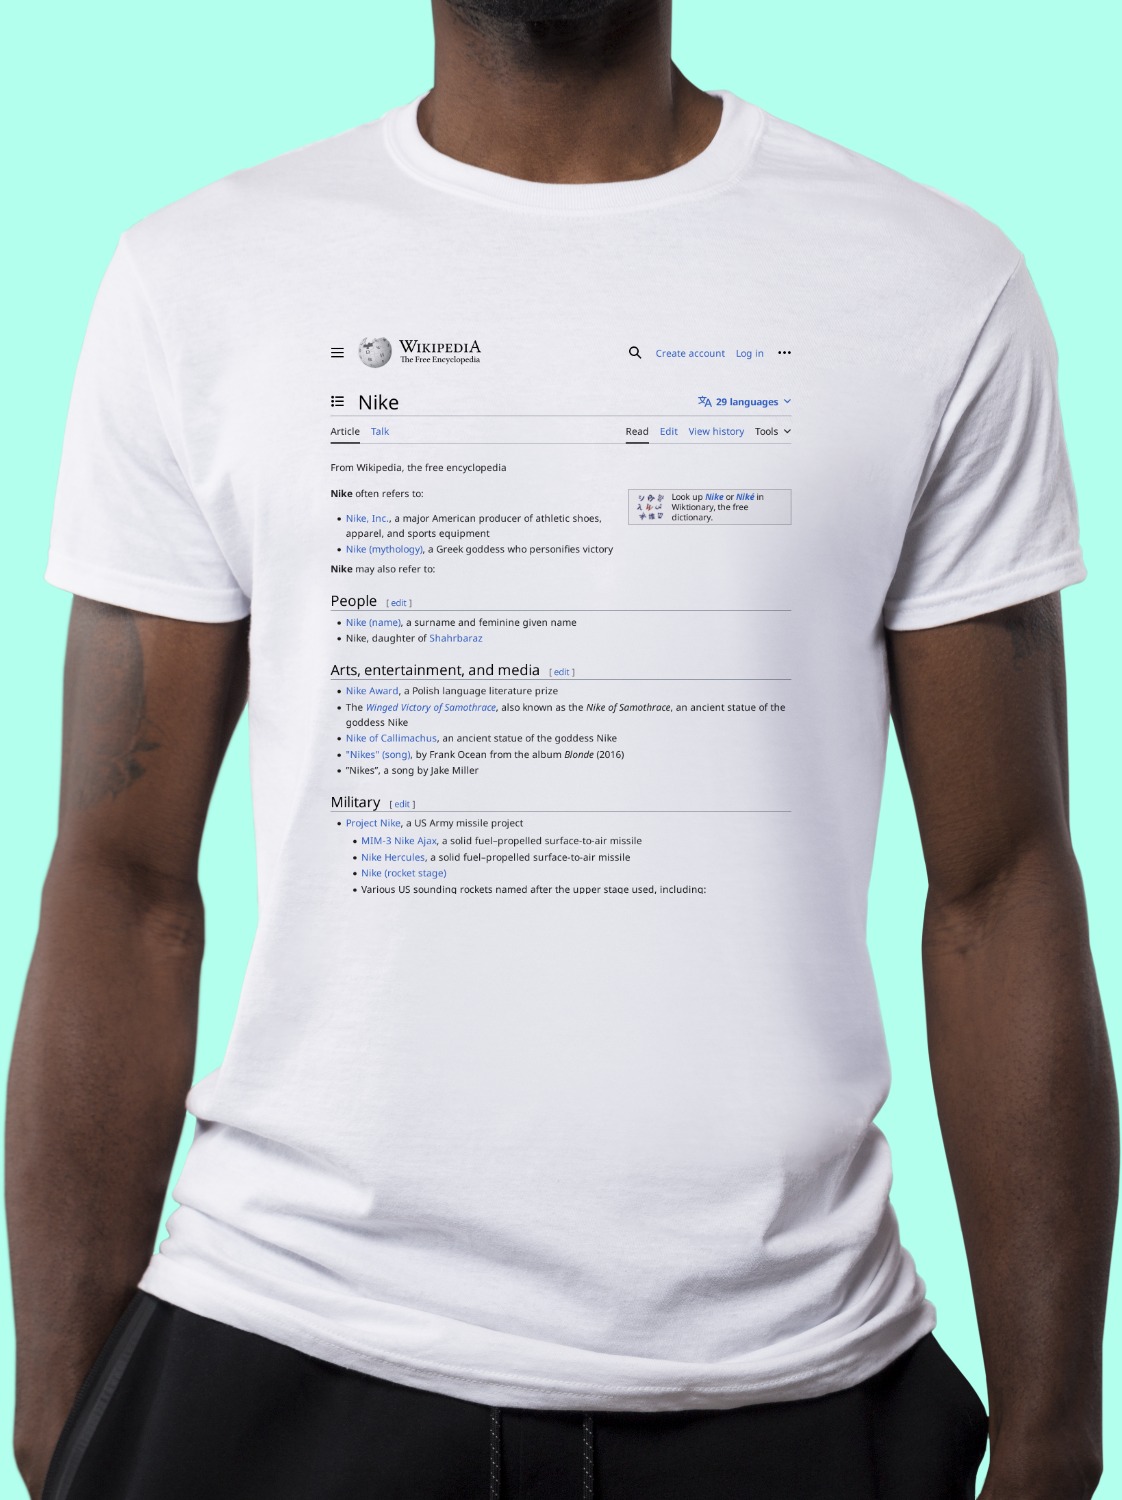 Nike Wikipedia Shirt